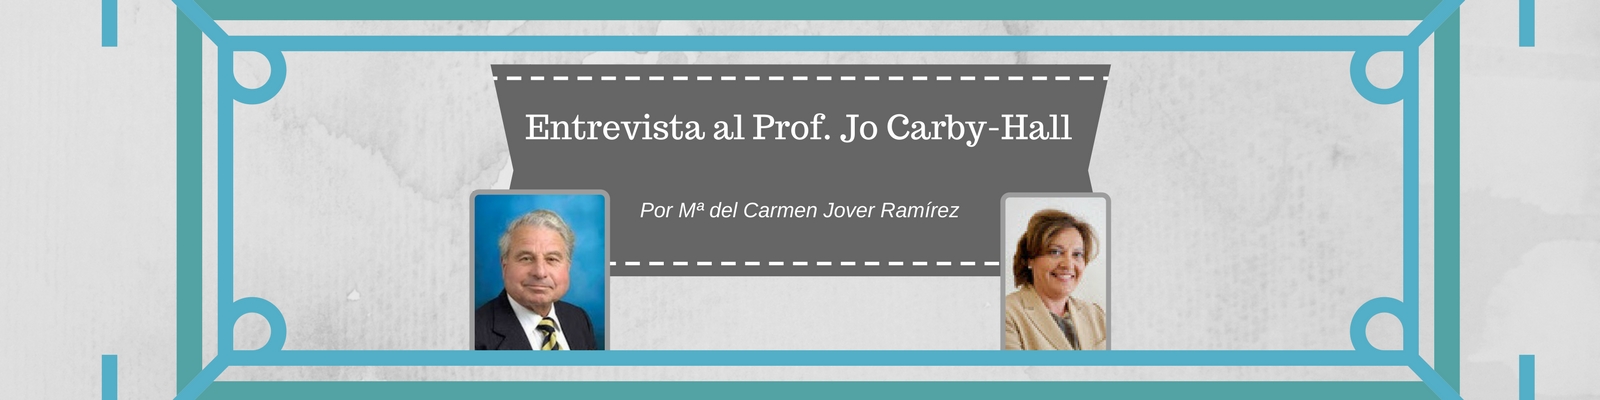 Entrevista al Profesor Jo Carby-Hall. Por Mª del Carmen Jover Ramírez